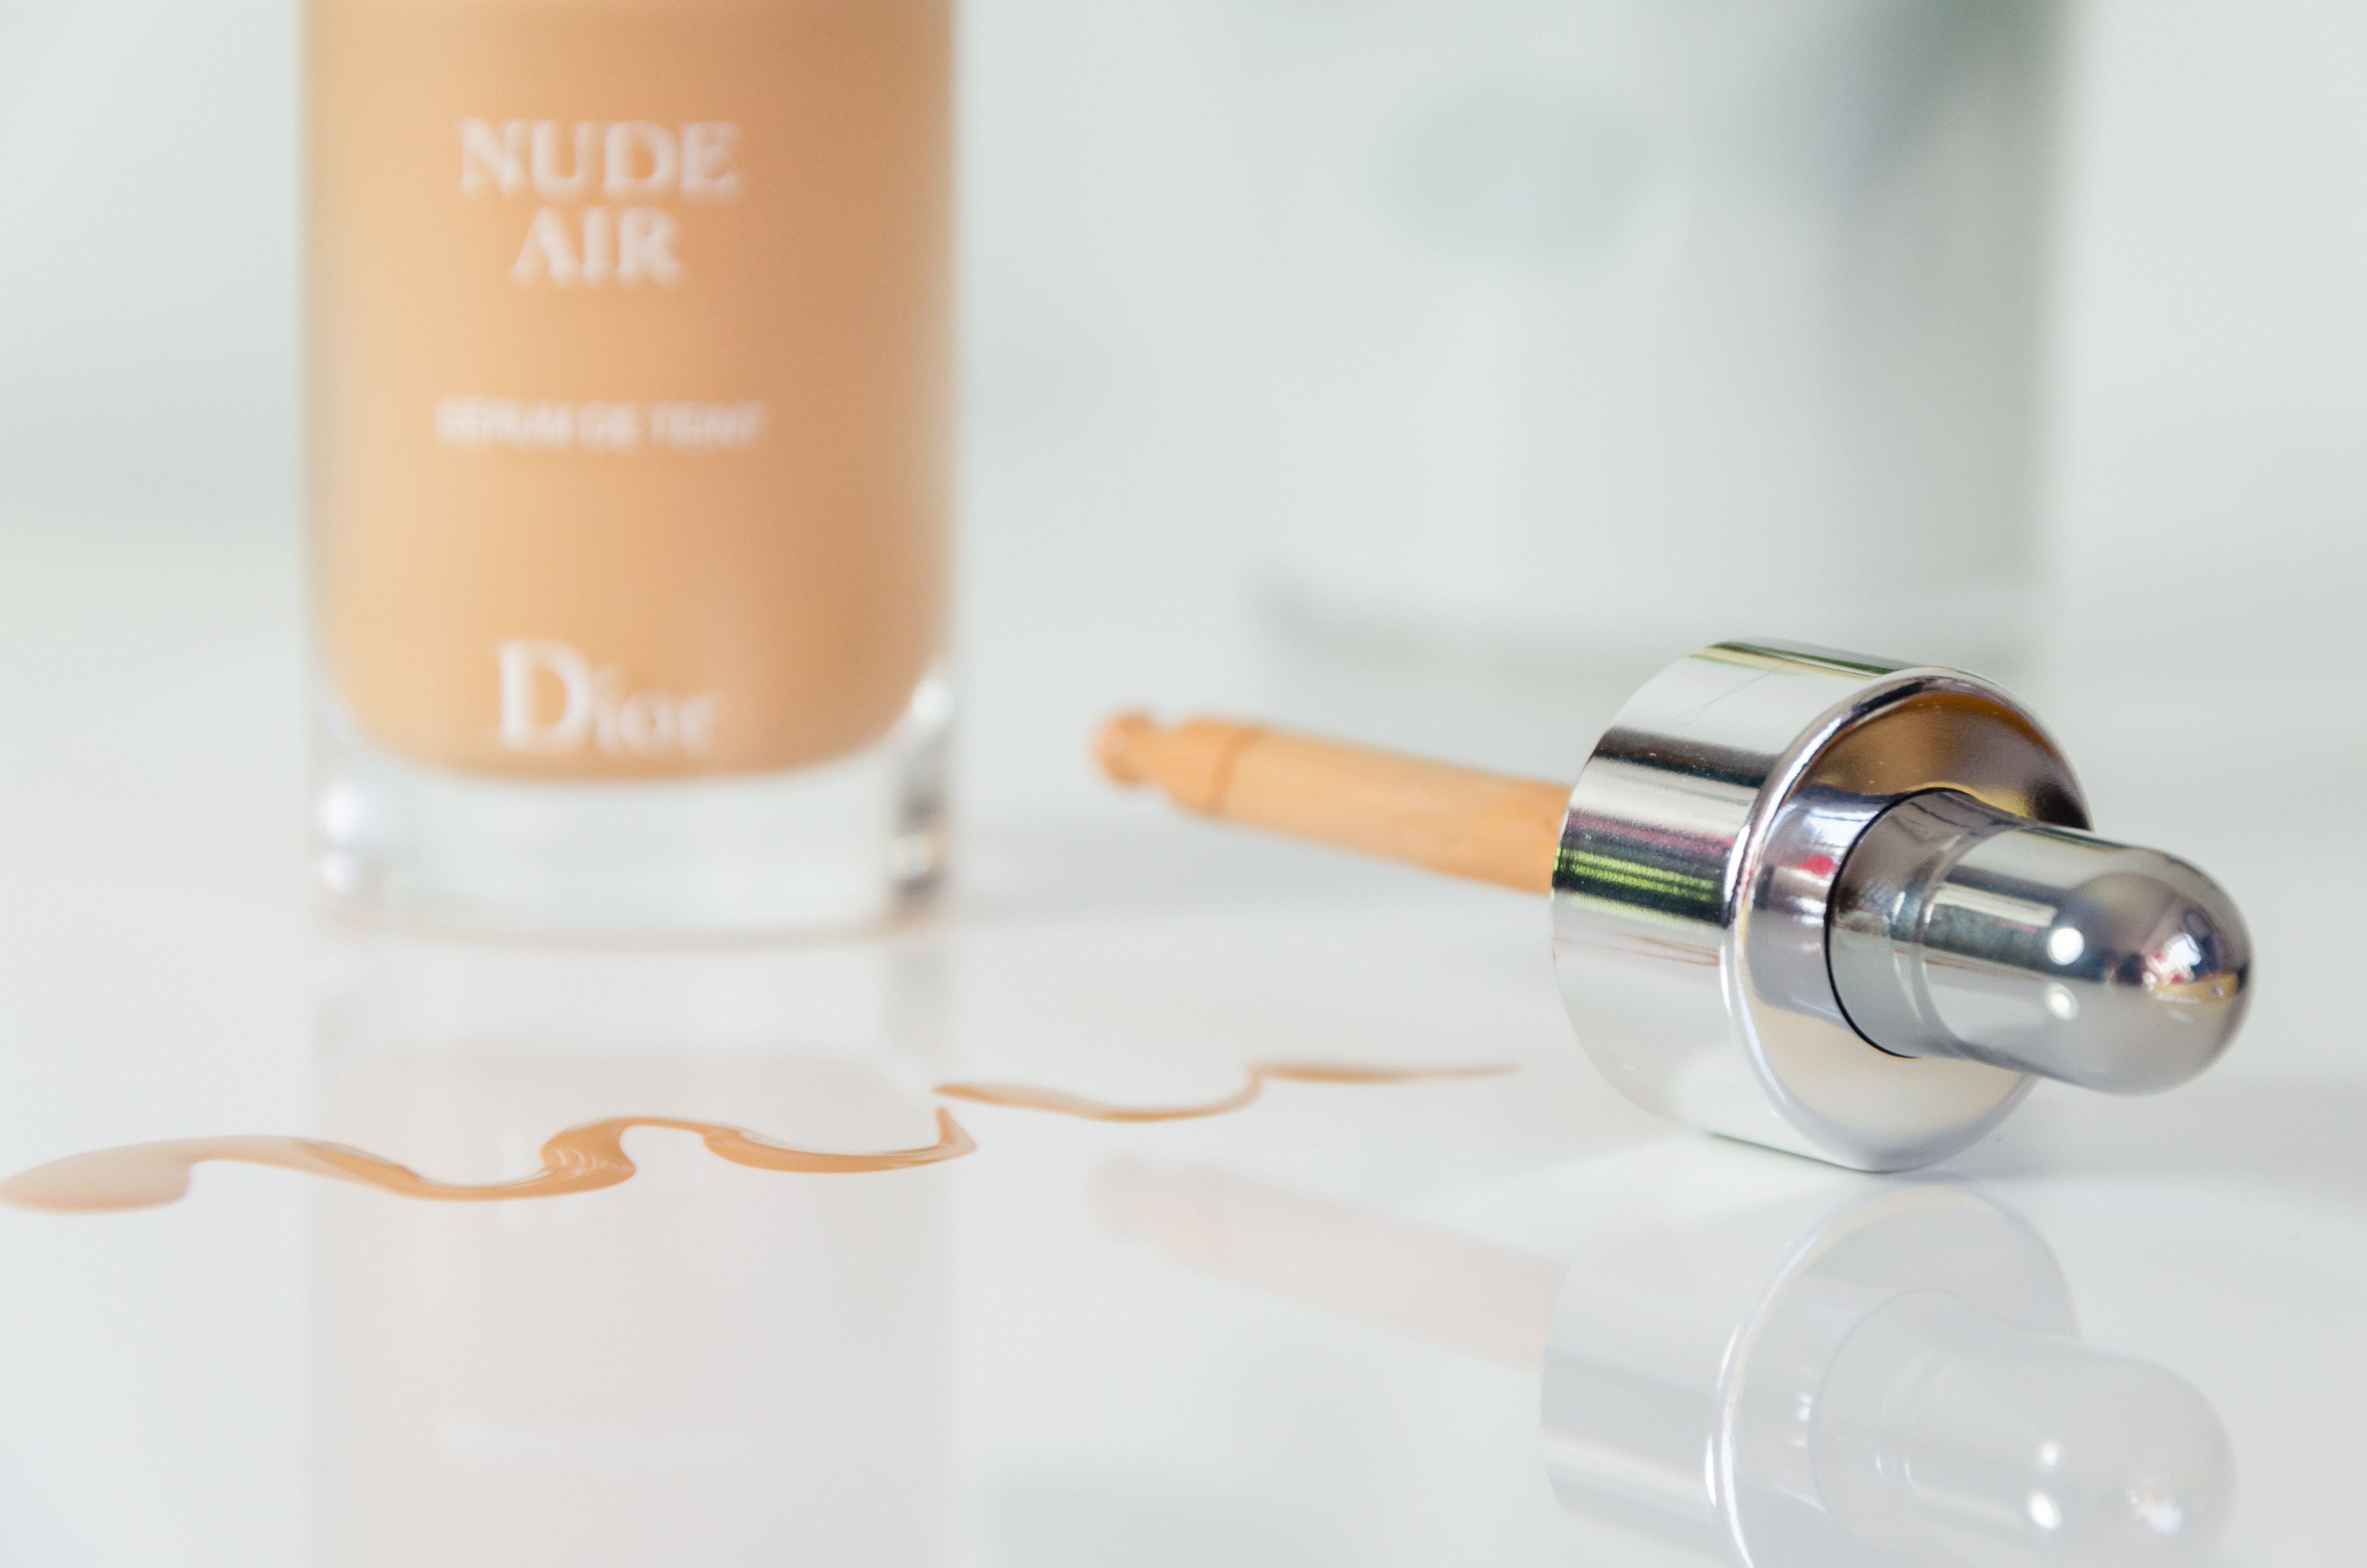 dior nude air make up